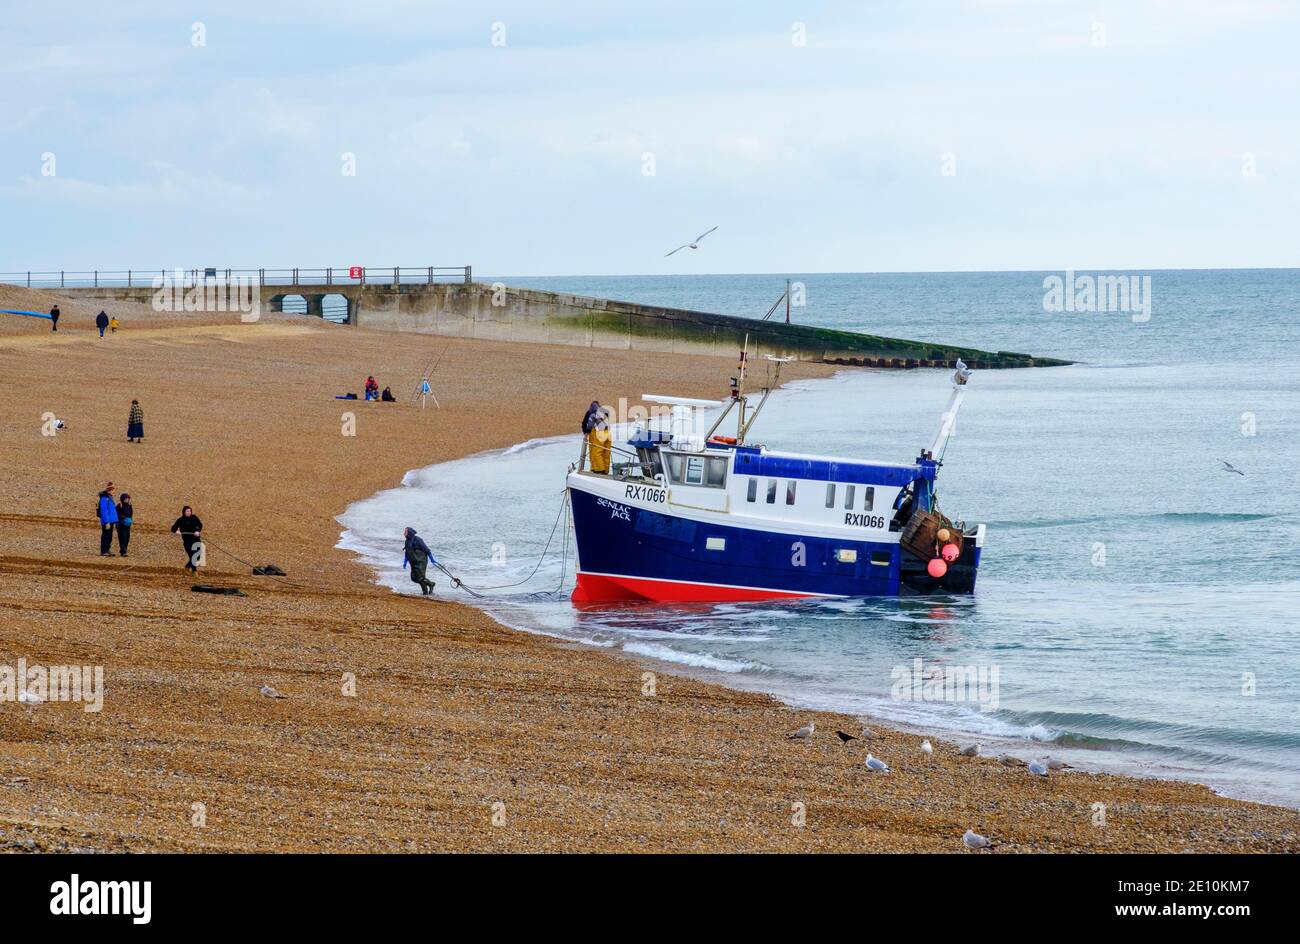 Hastings, bateau de pêche, RX1066 'Stenlac Jack', atterrissage sur la plage de la vieille ville de Stade, East Sussex, Royaume-Uni, Grande-Bretagne, GB. Pêche Manche Banque D'Images